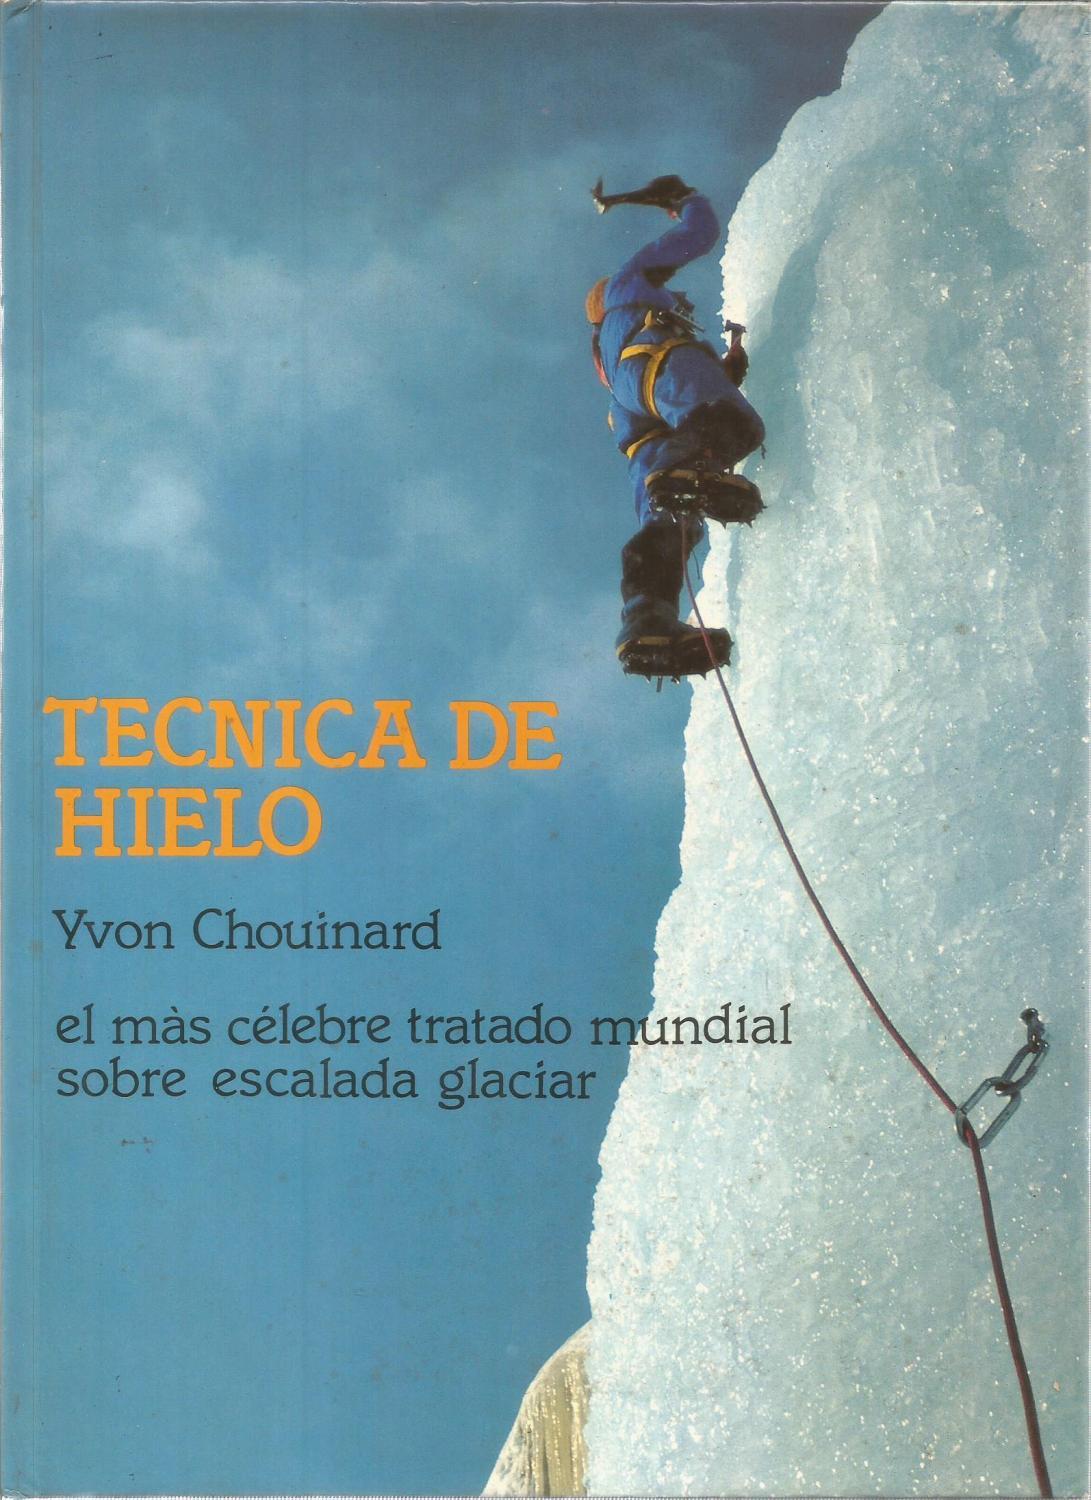 TÉCNICA DE HIELO, Yvon Chouinard